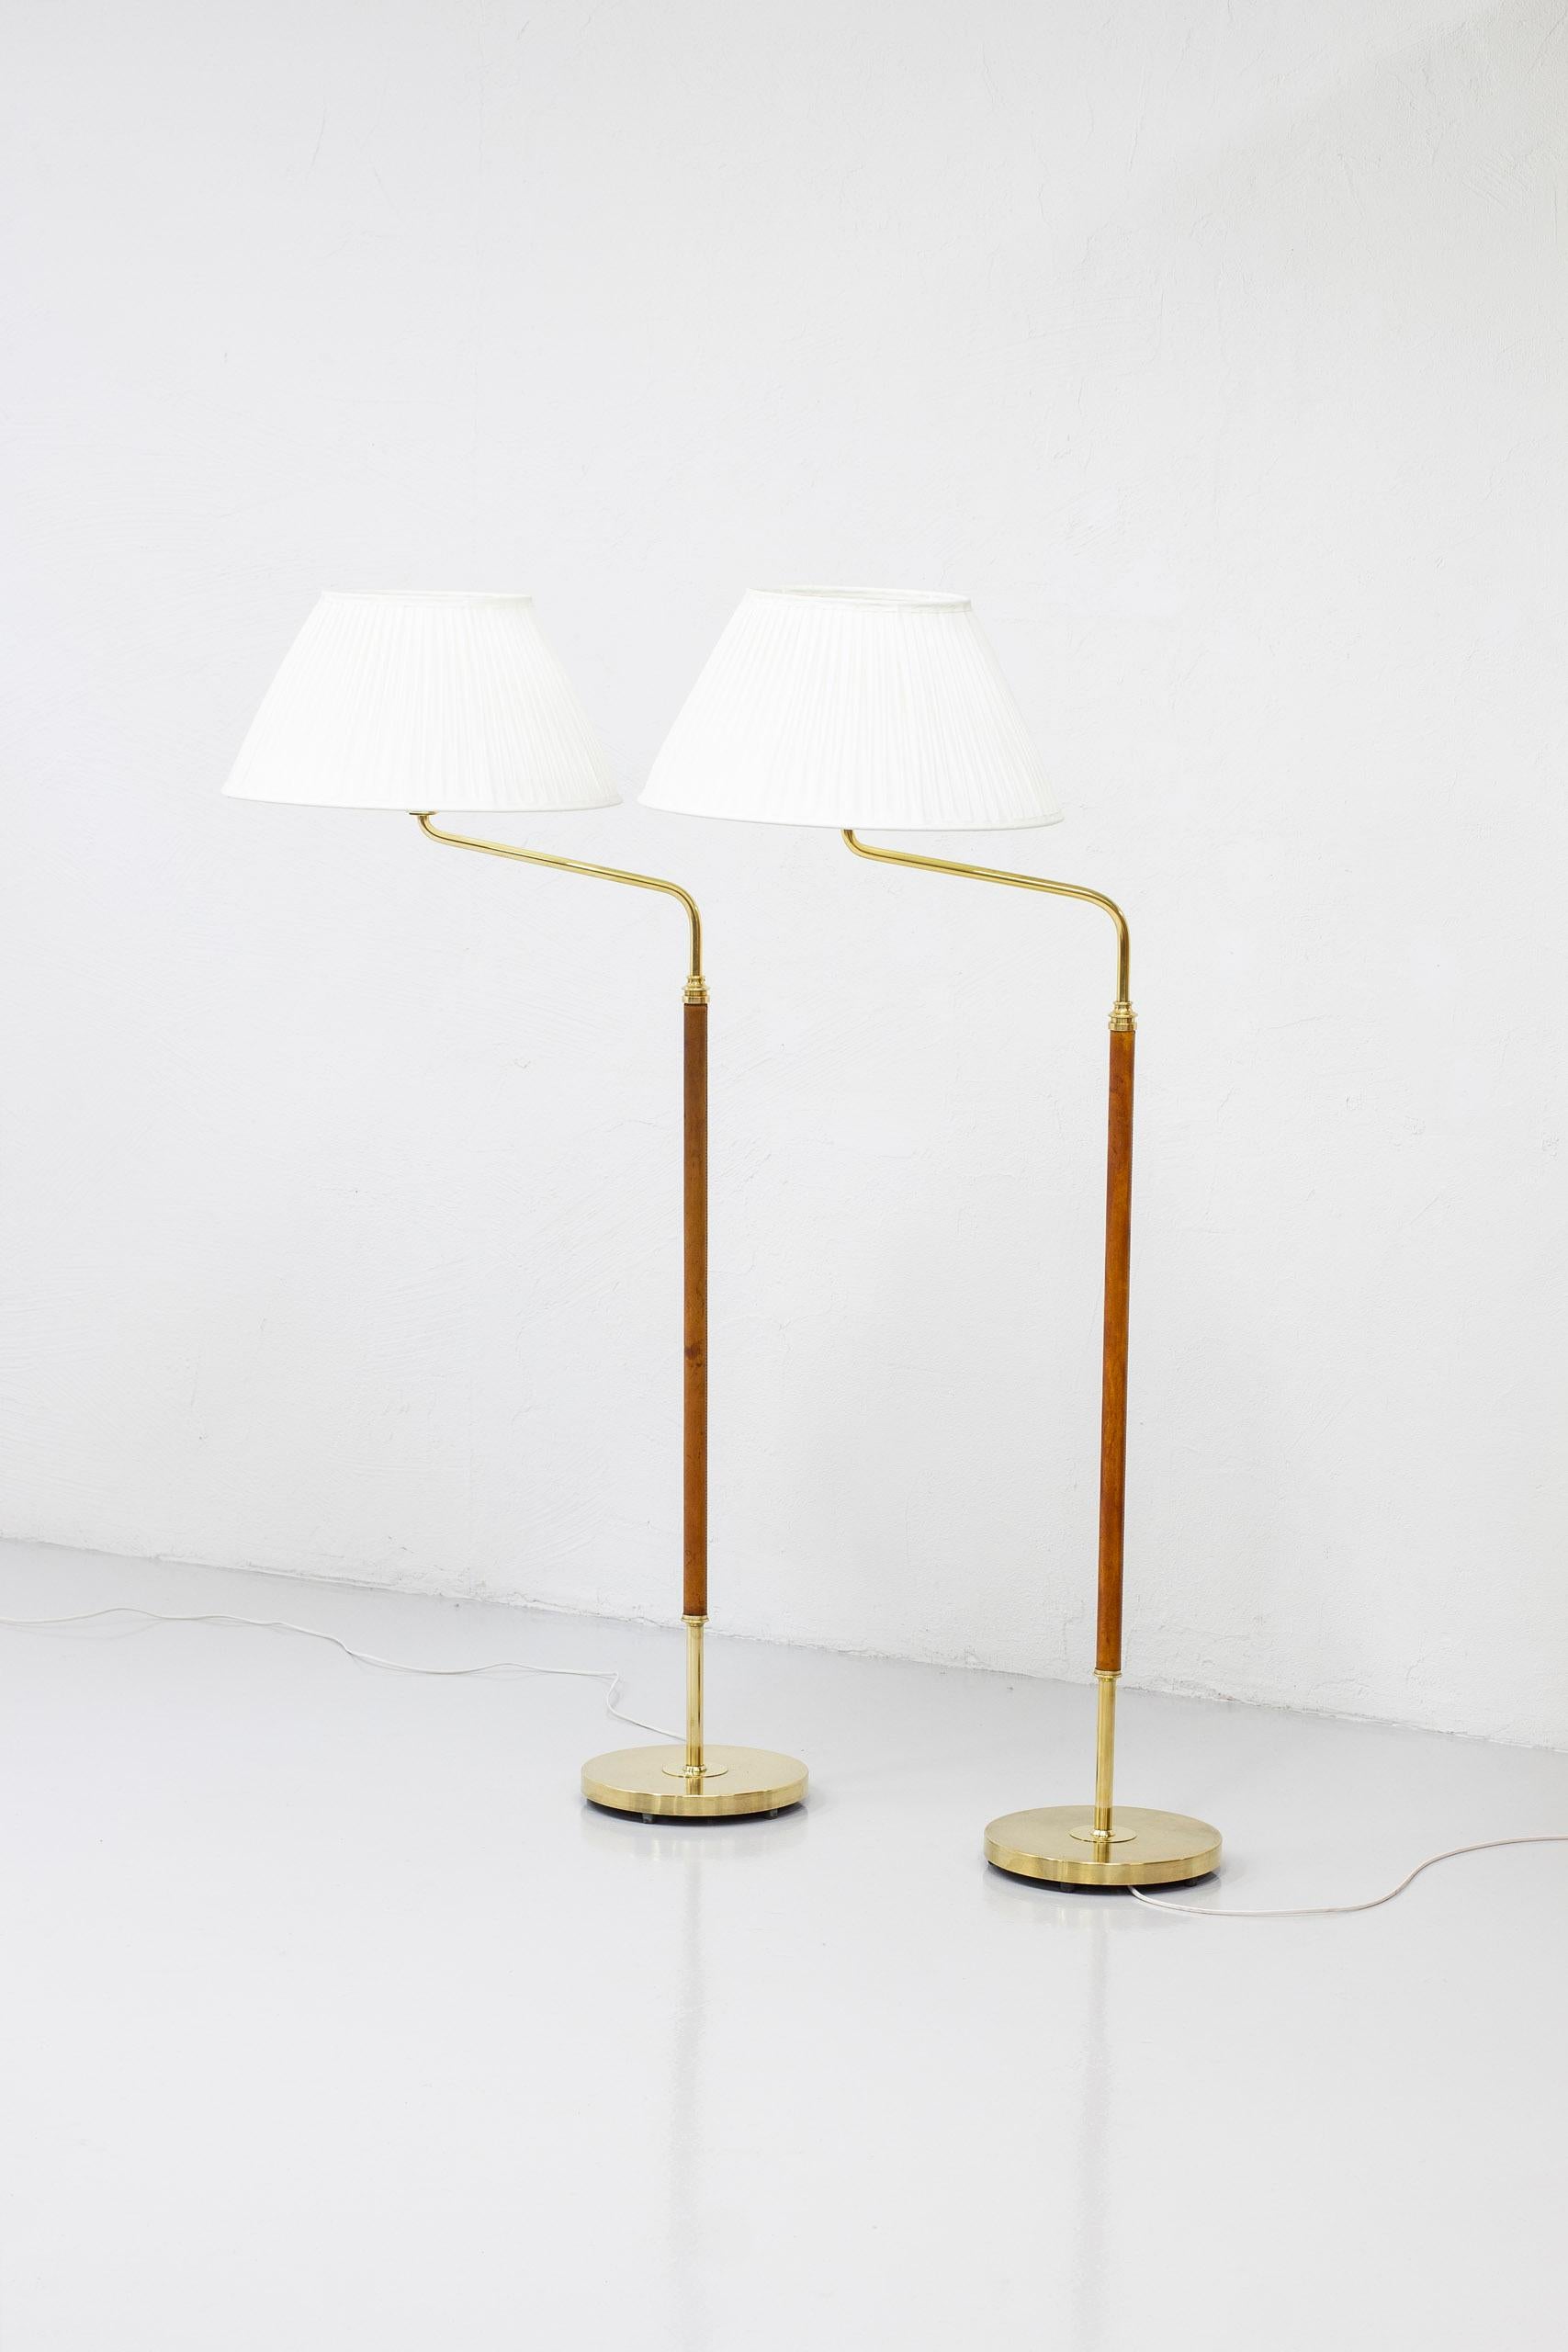 Swedish Pair of Floor Lamps Model 31644 Designed by Bertil Brisborg